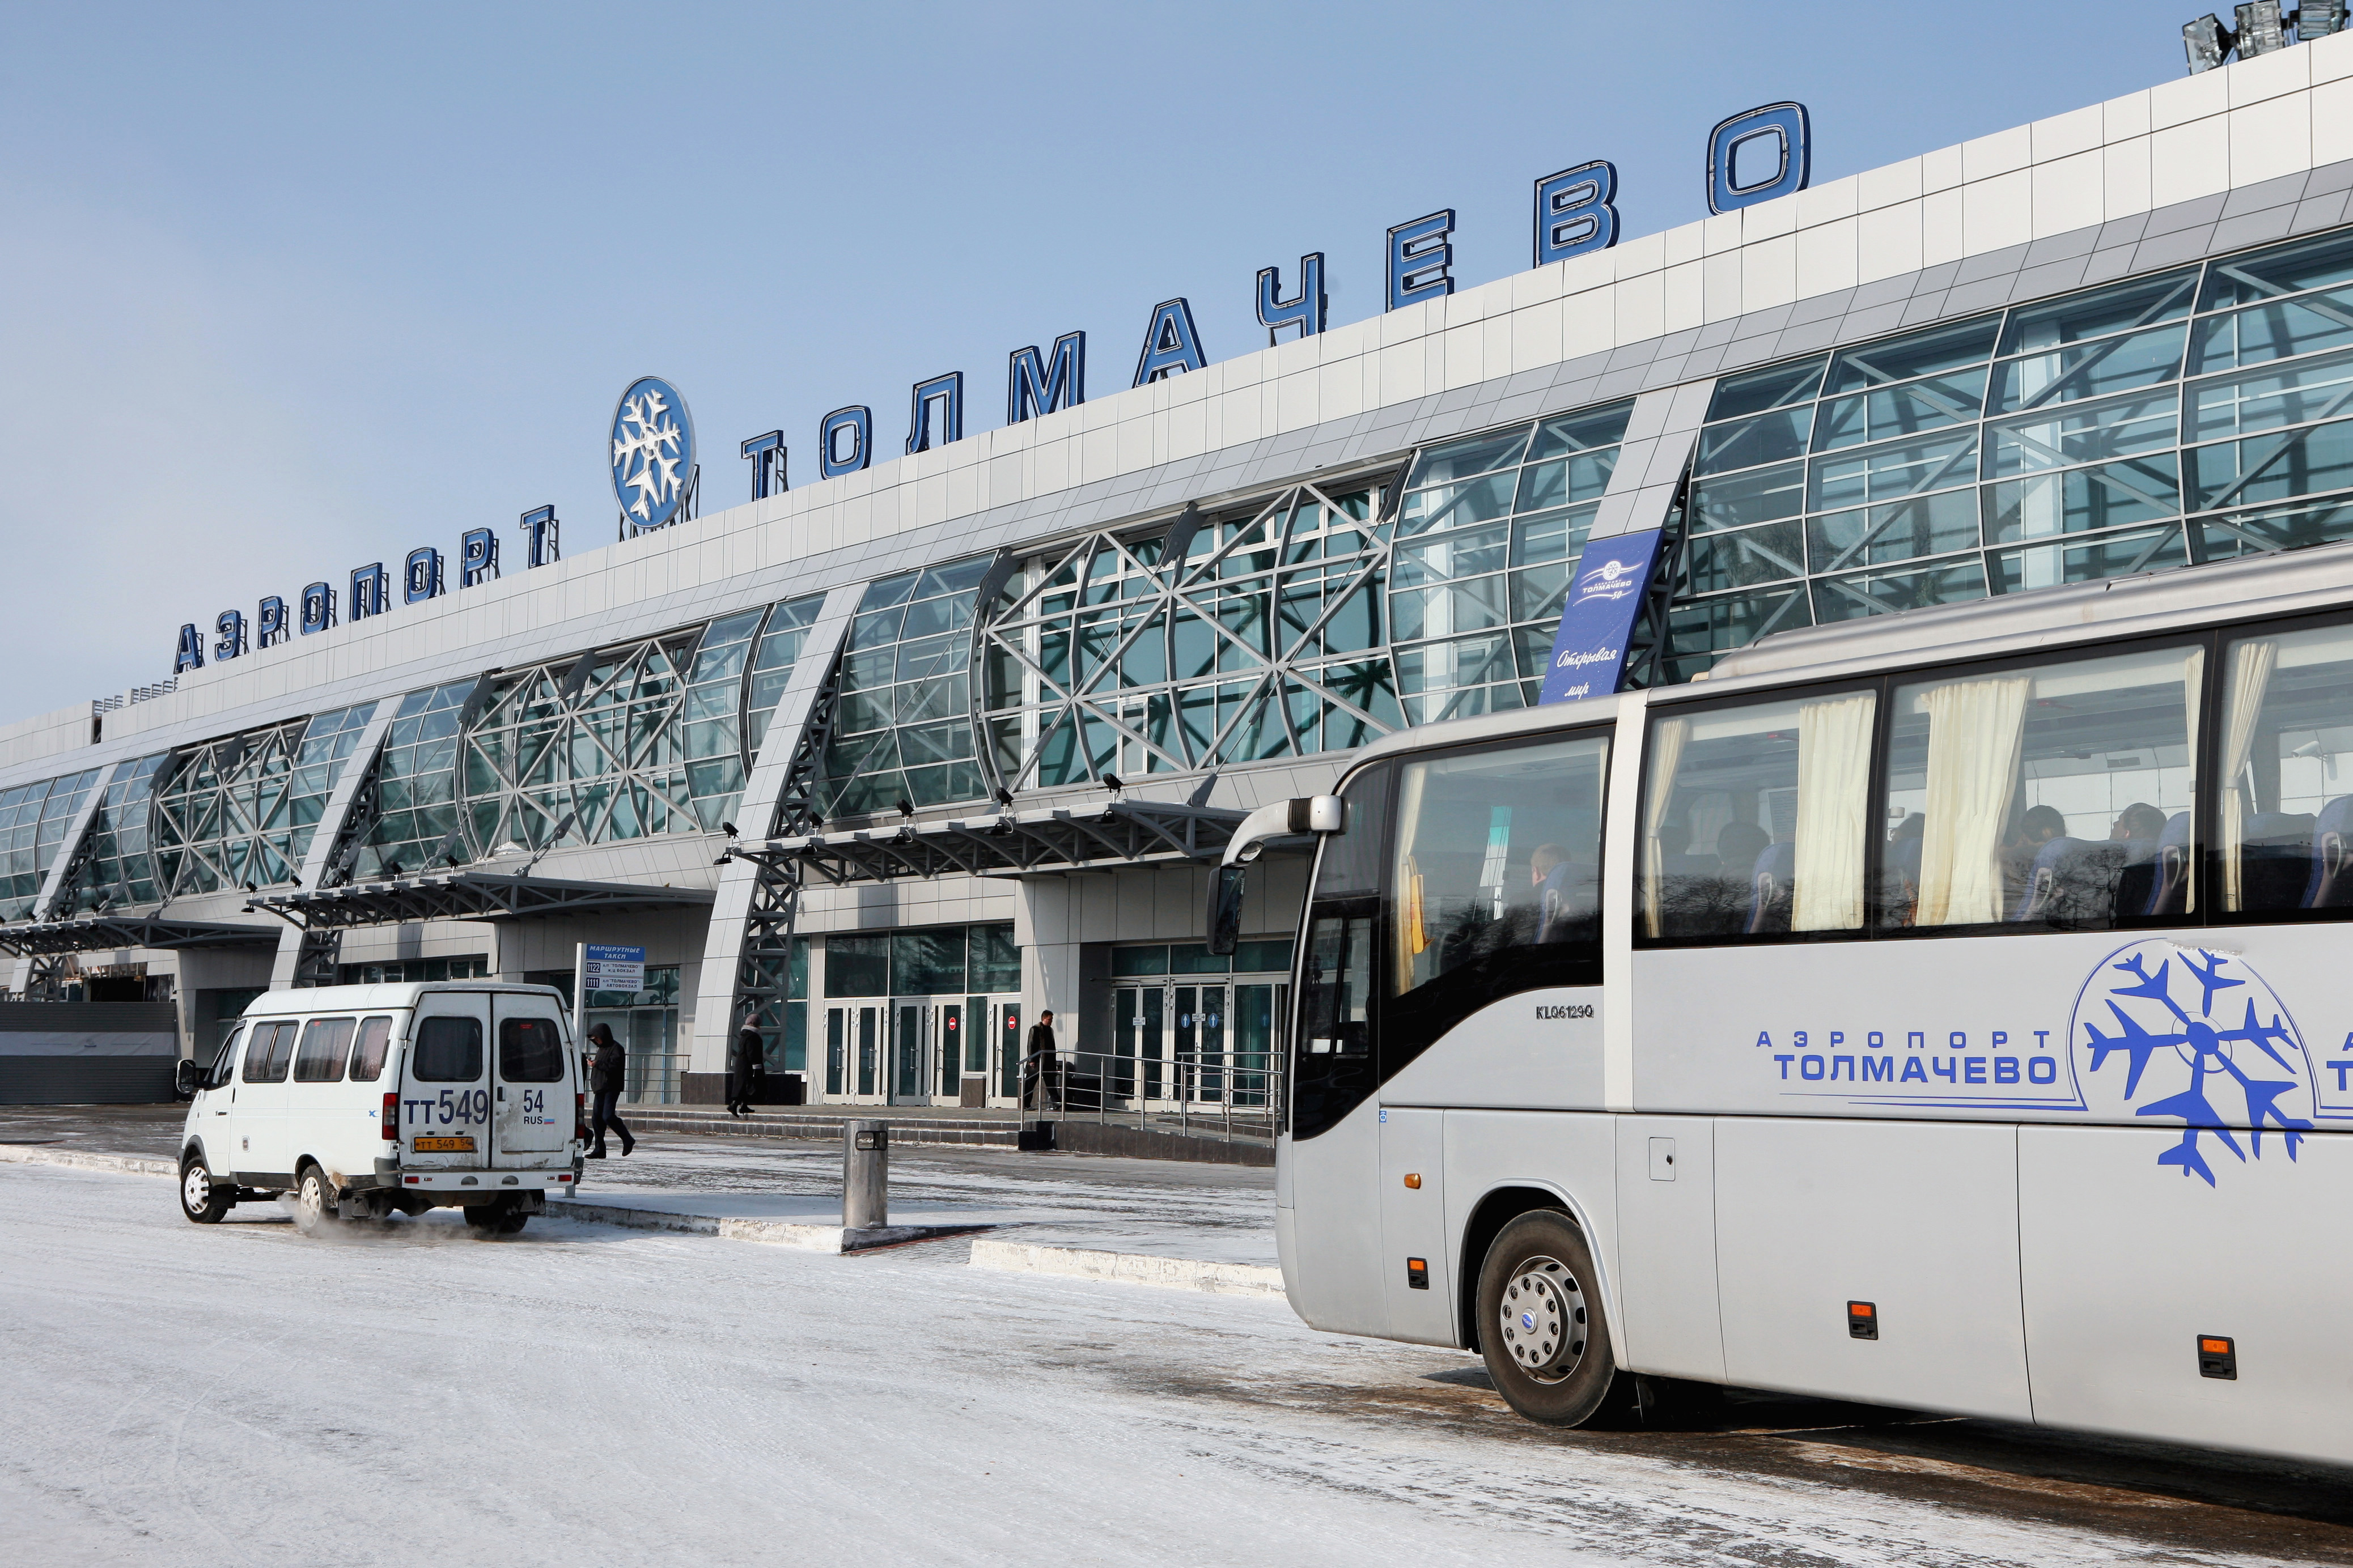 Автобус из аэропорта новосибирска. Аэропорт Толмачево Новосибирск. Аэропорт Толмачево Новосибирск зима. Новосибирск Tolmacheva аэропорт. Толмачева аэропорт зима.